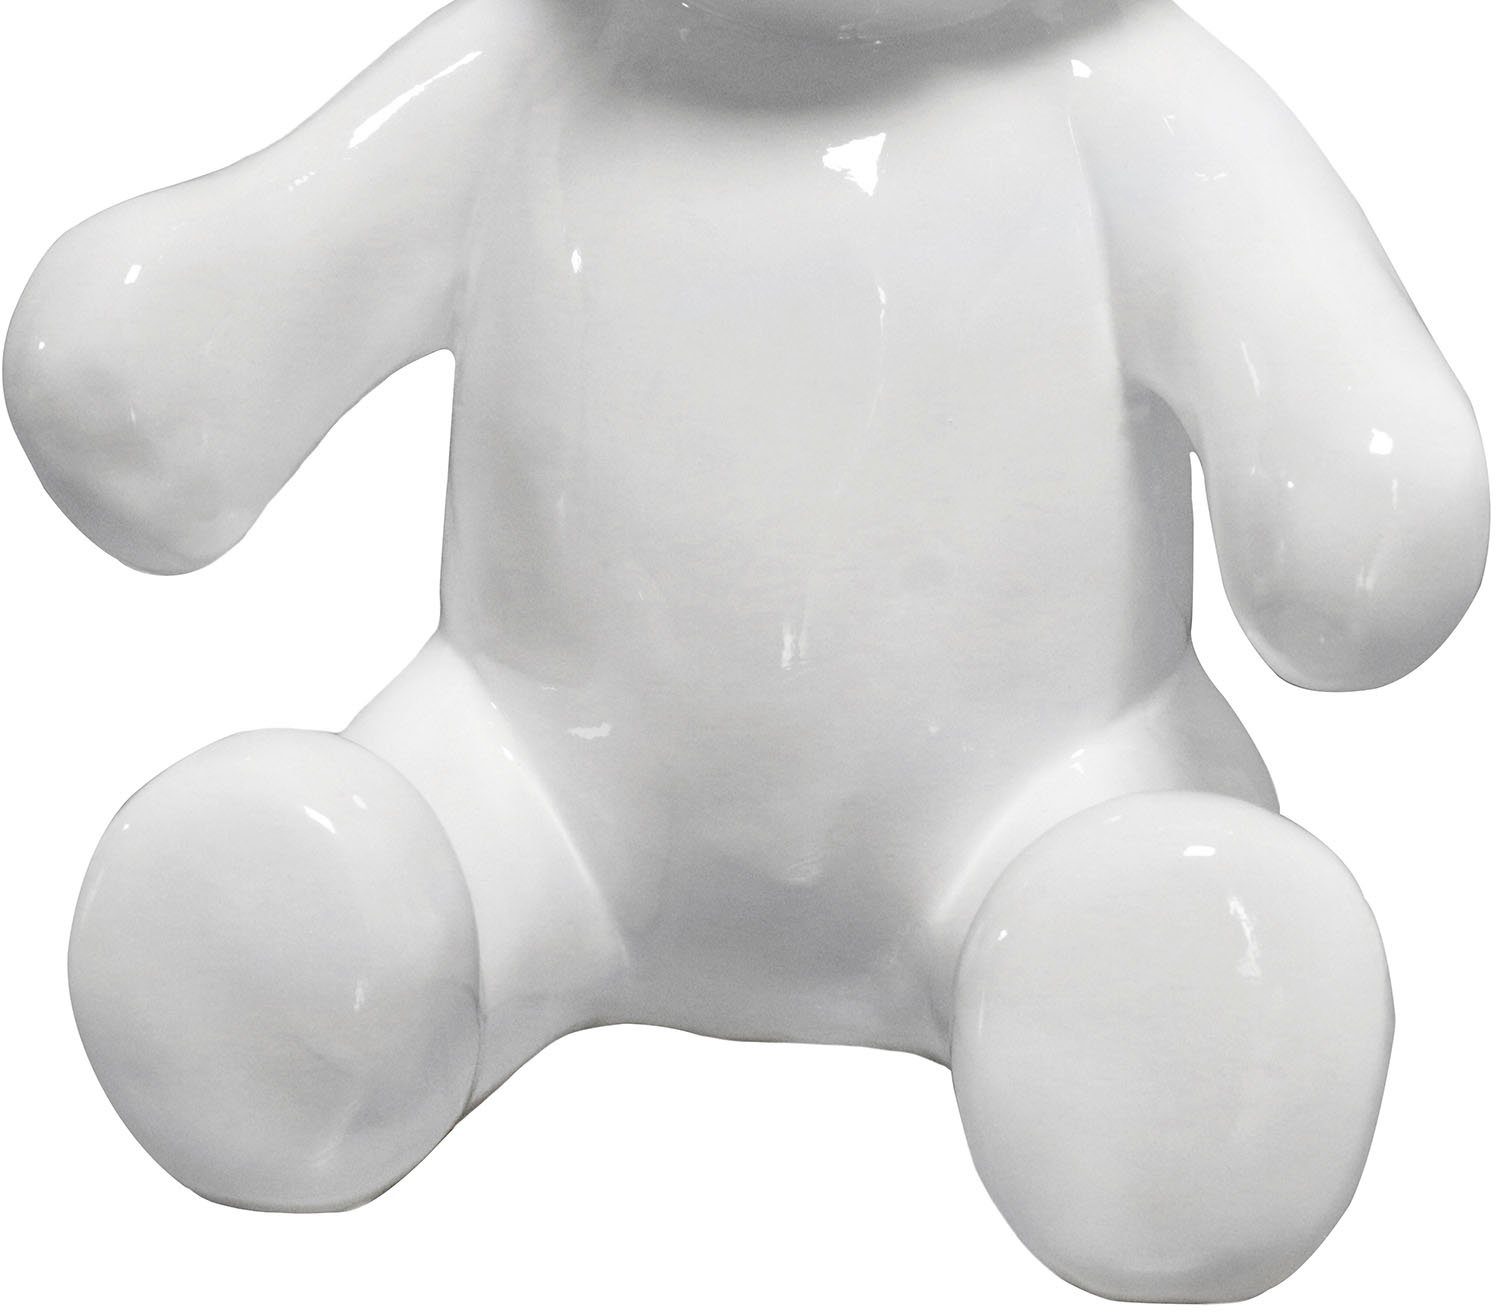 St) Ted Skulptur Kayoom Tierfigur Weiß 100 (1